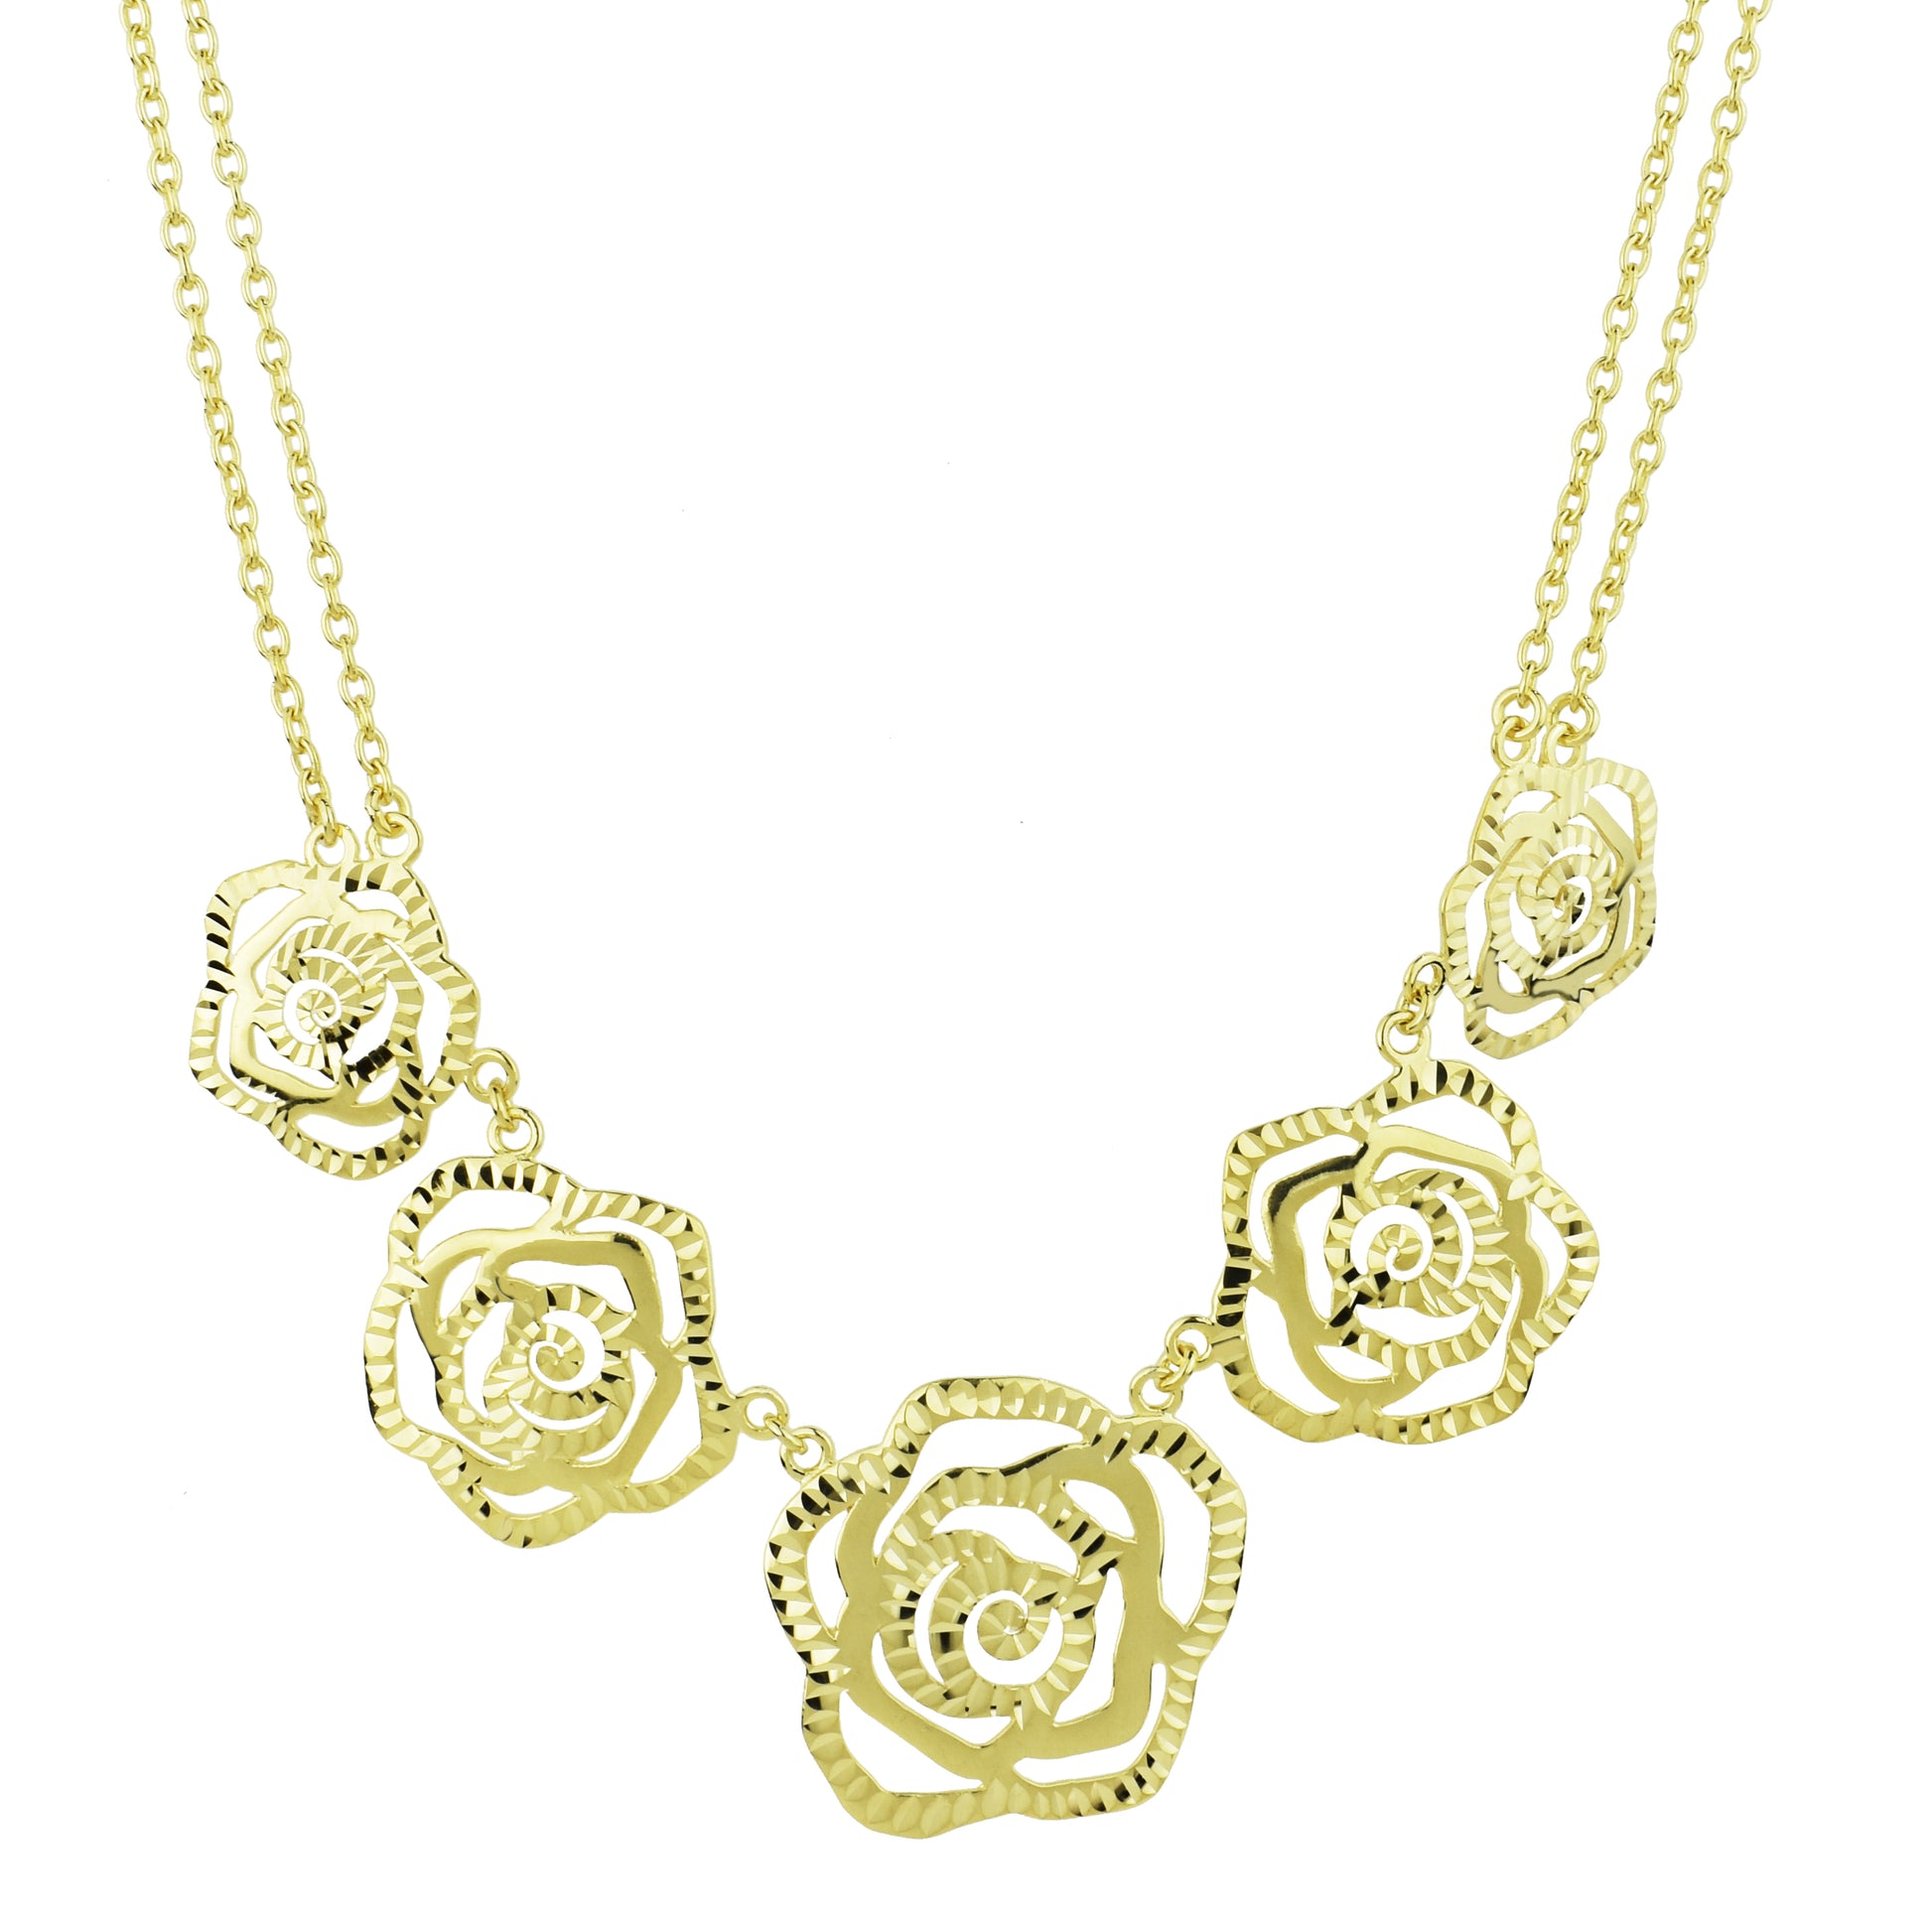 Séchic 14k Five Diamond Cut Roses Necklace 18"